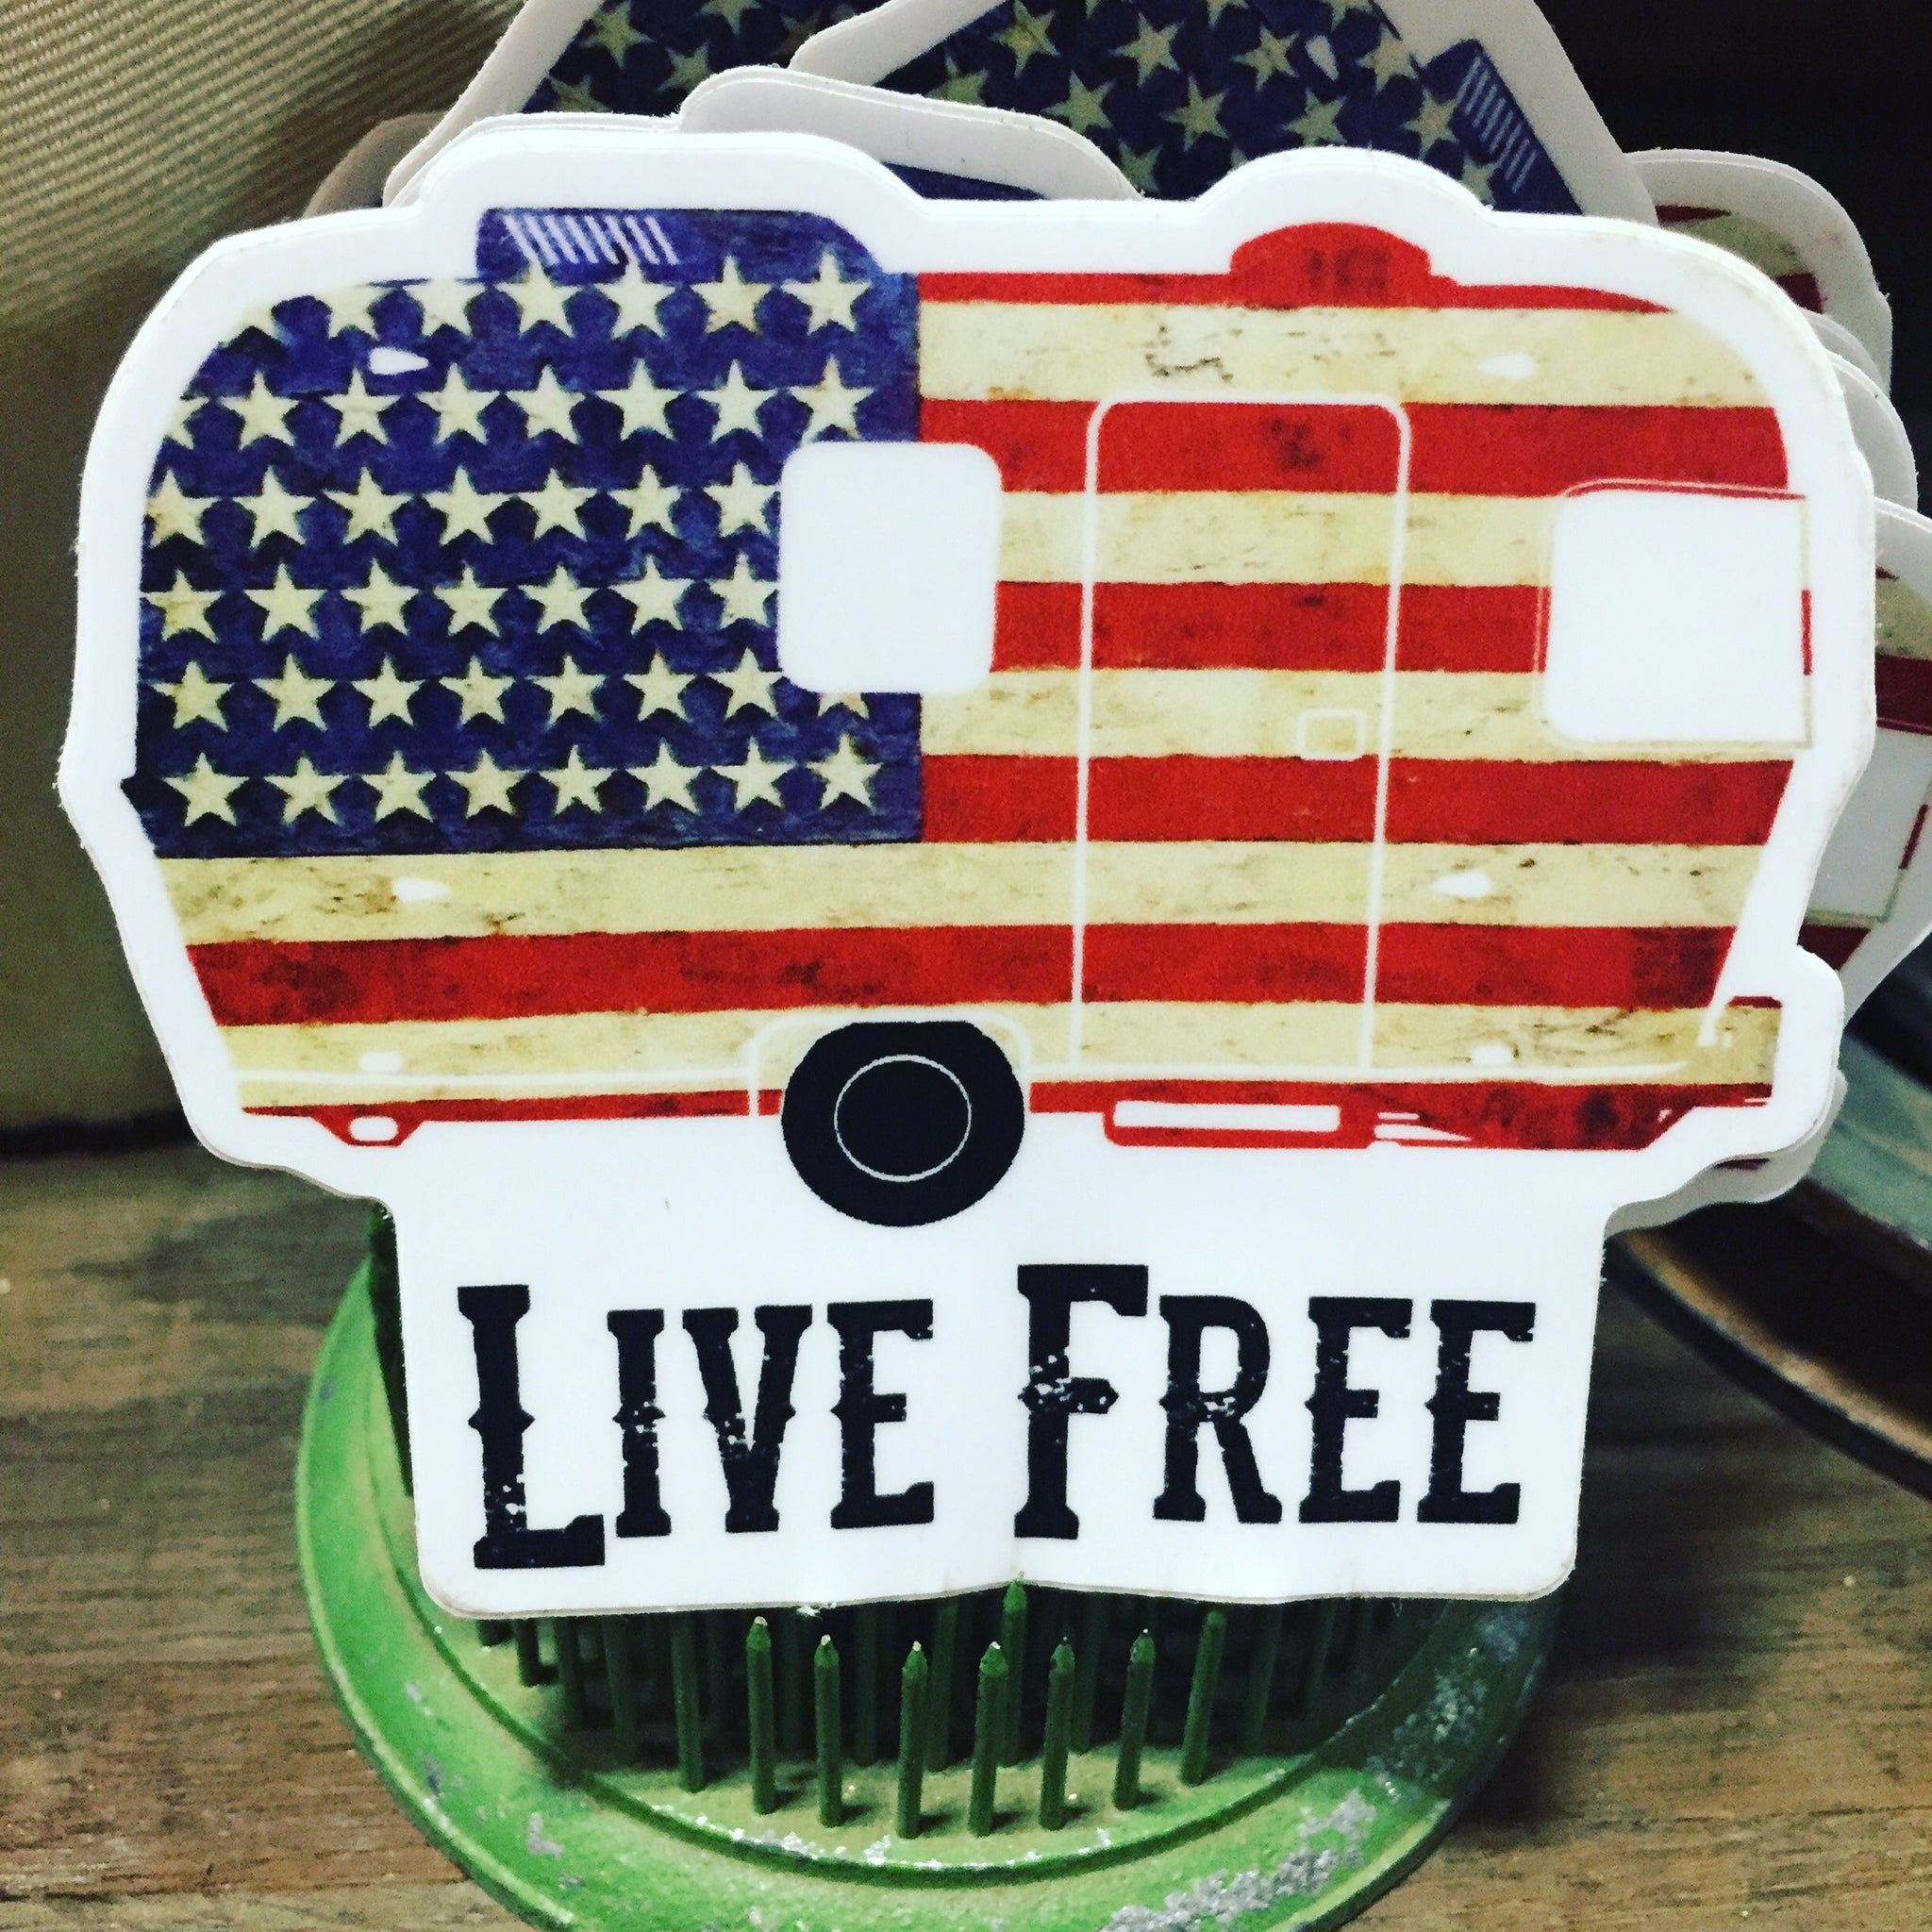 Live Free Flag Vintage Trailer Die Cut Sticker